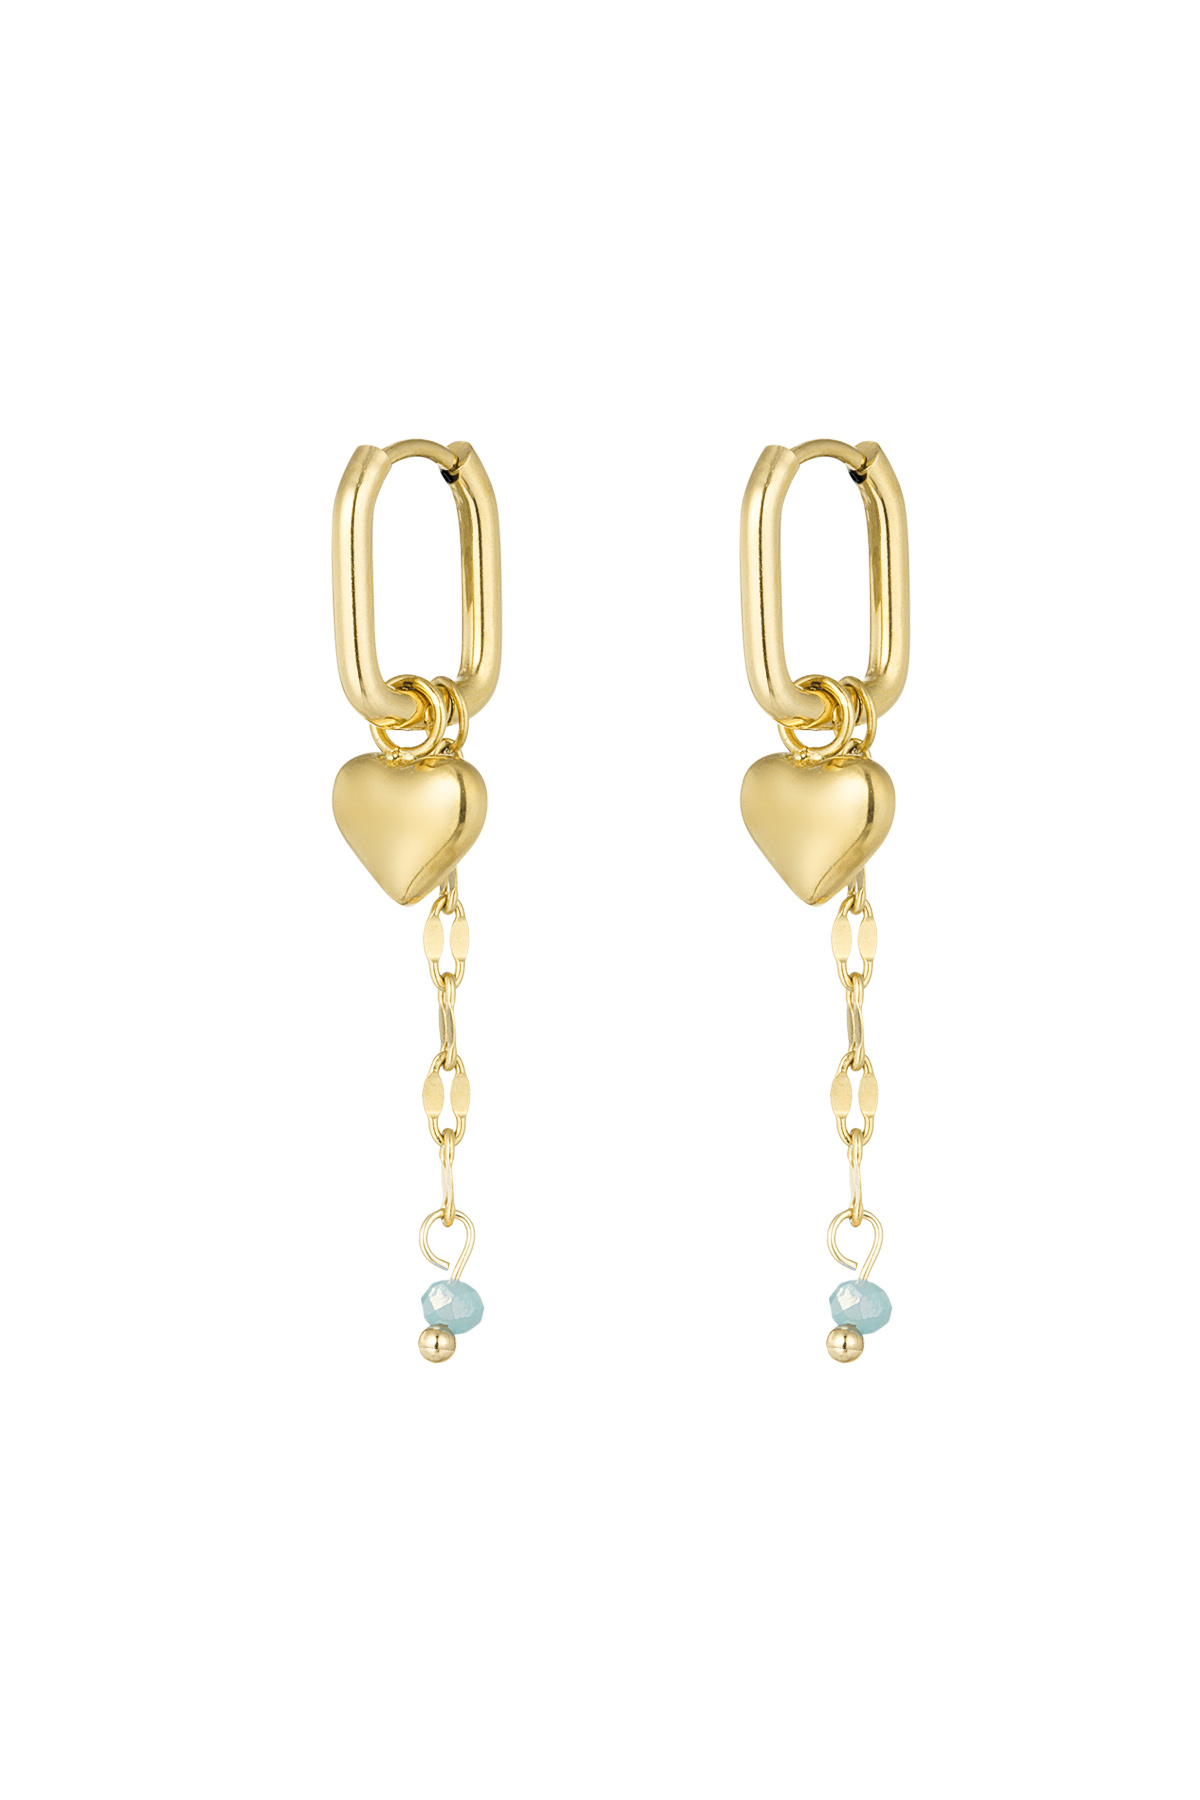 Forever love earrings - blue/gold 